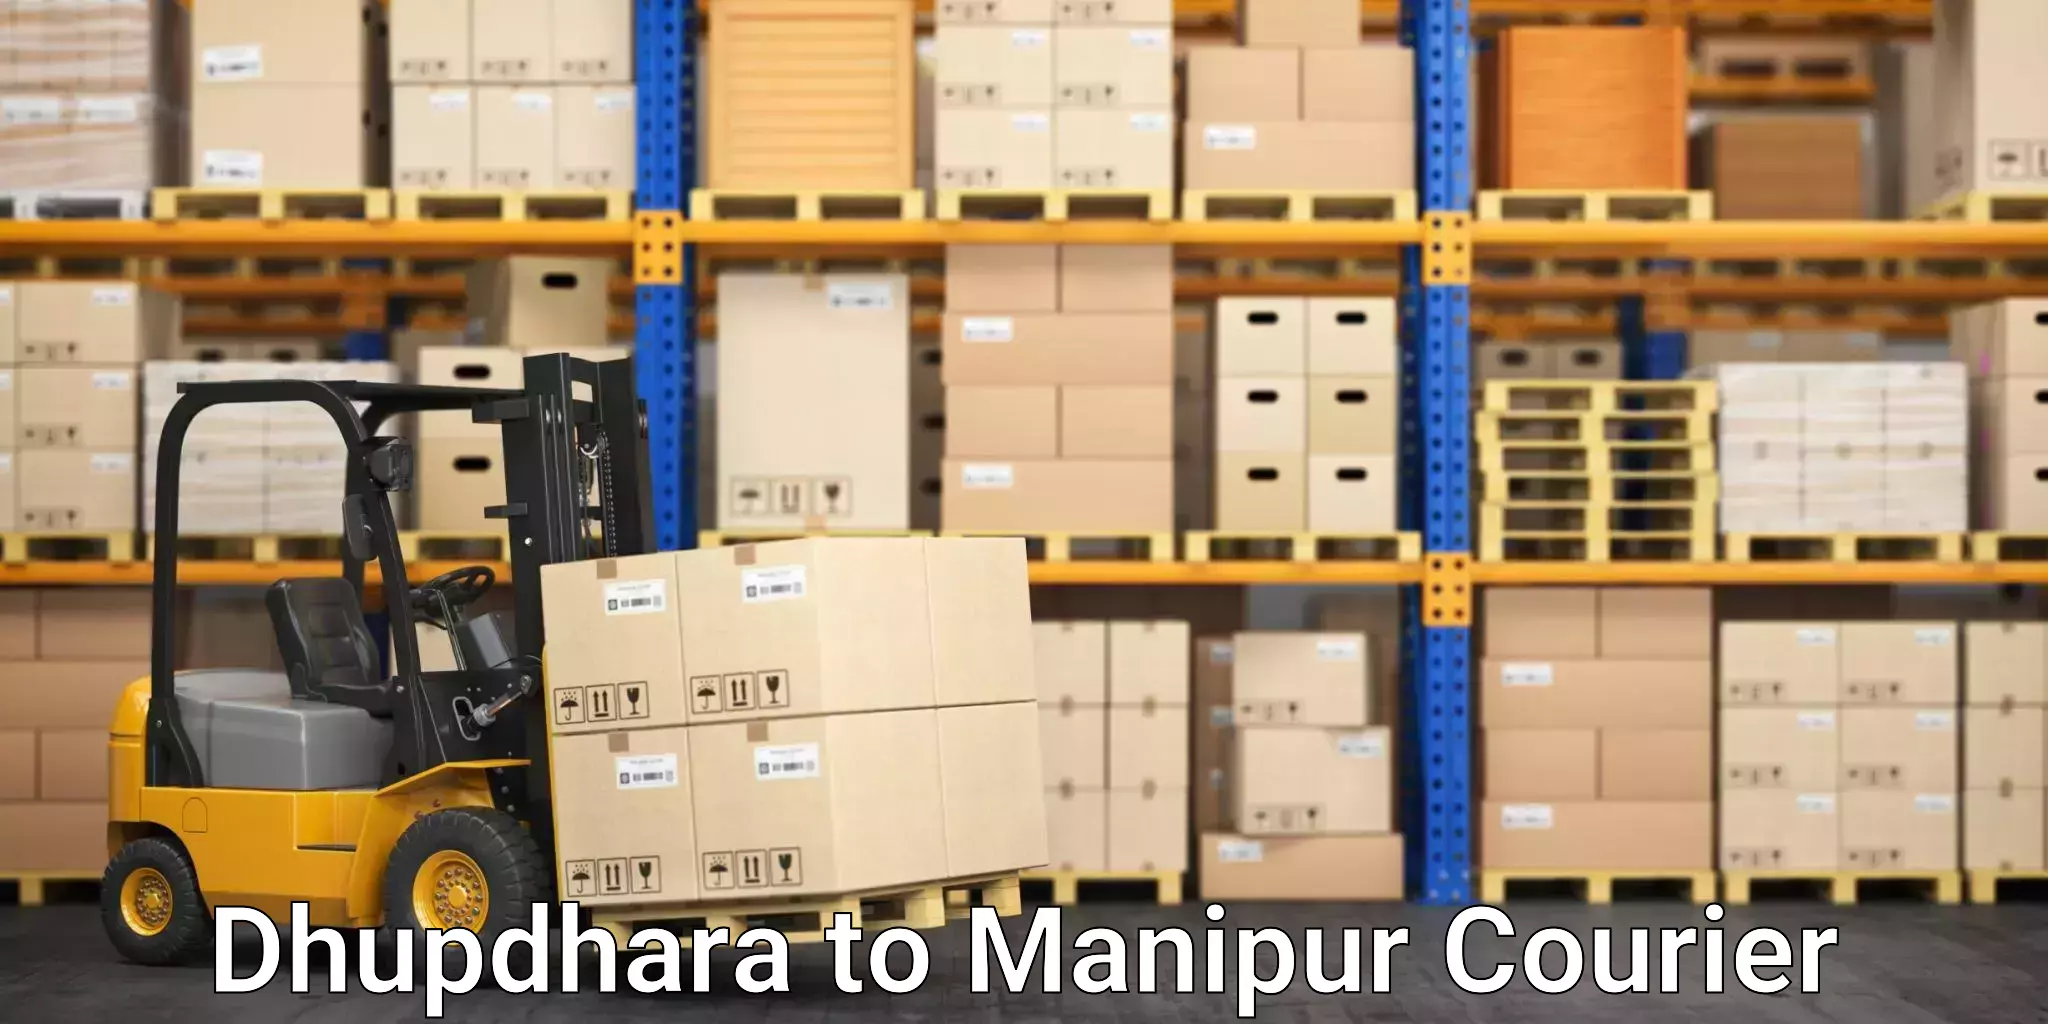 Efficient parcel transport Dhupdhara to Kanti